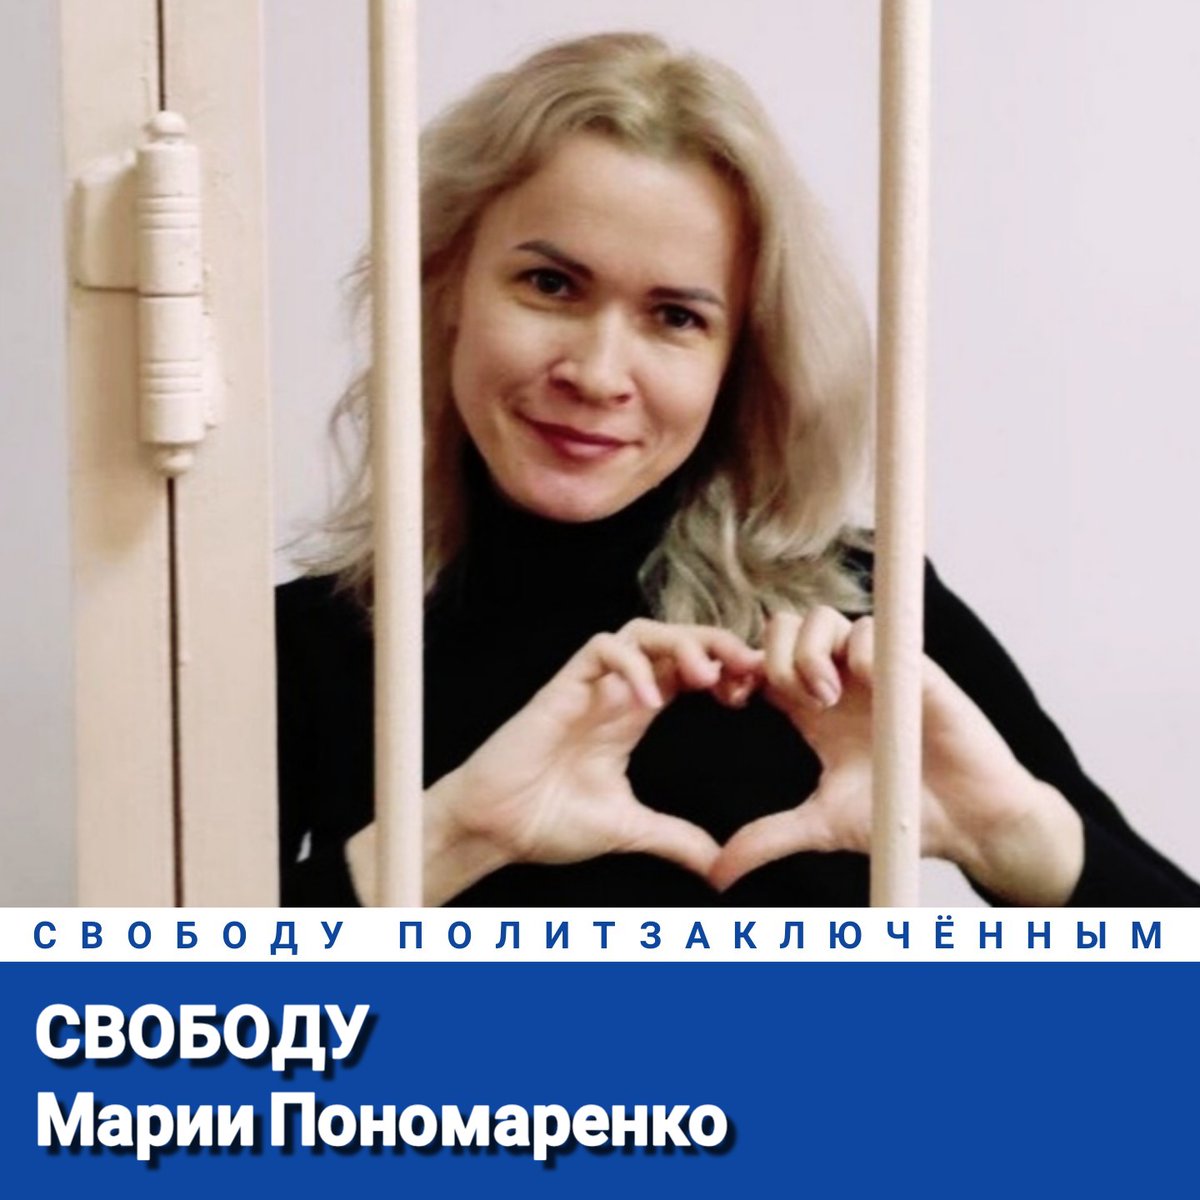 Свободу Марии Пономаренко! Свободу политзаключённым! #СвободуМарииПономаренко #СвободуПолитзаключённым